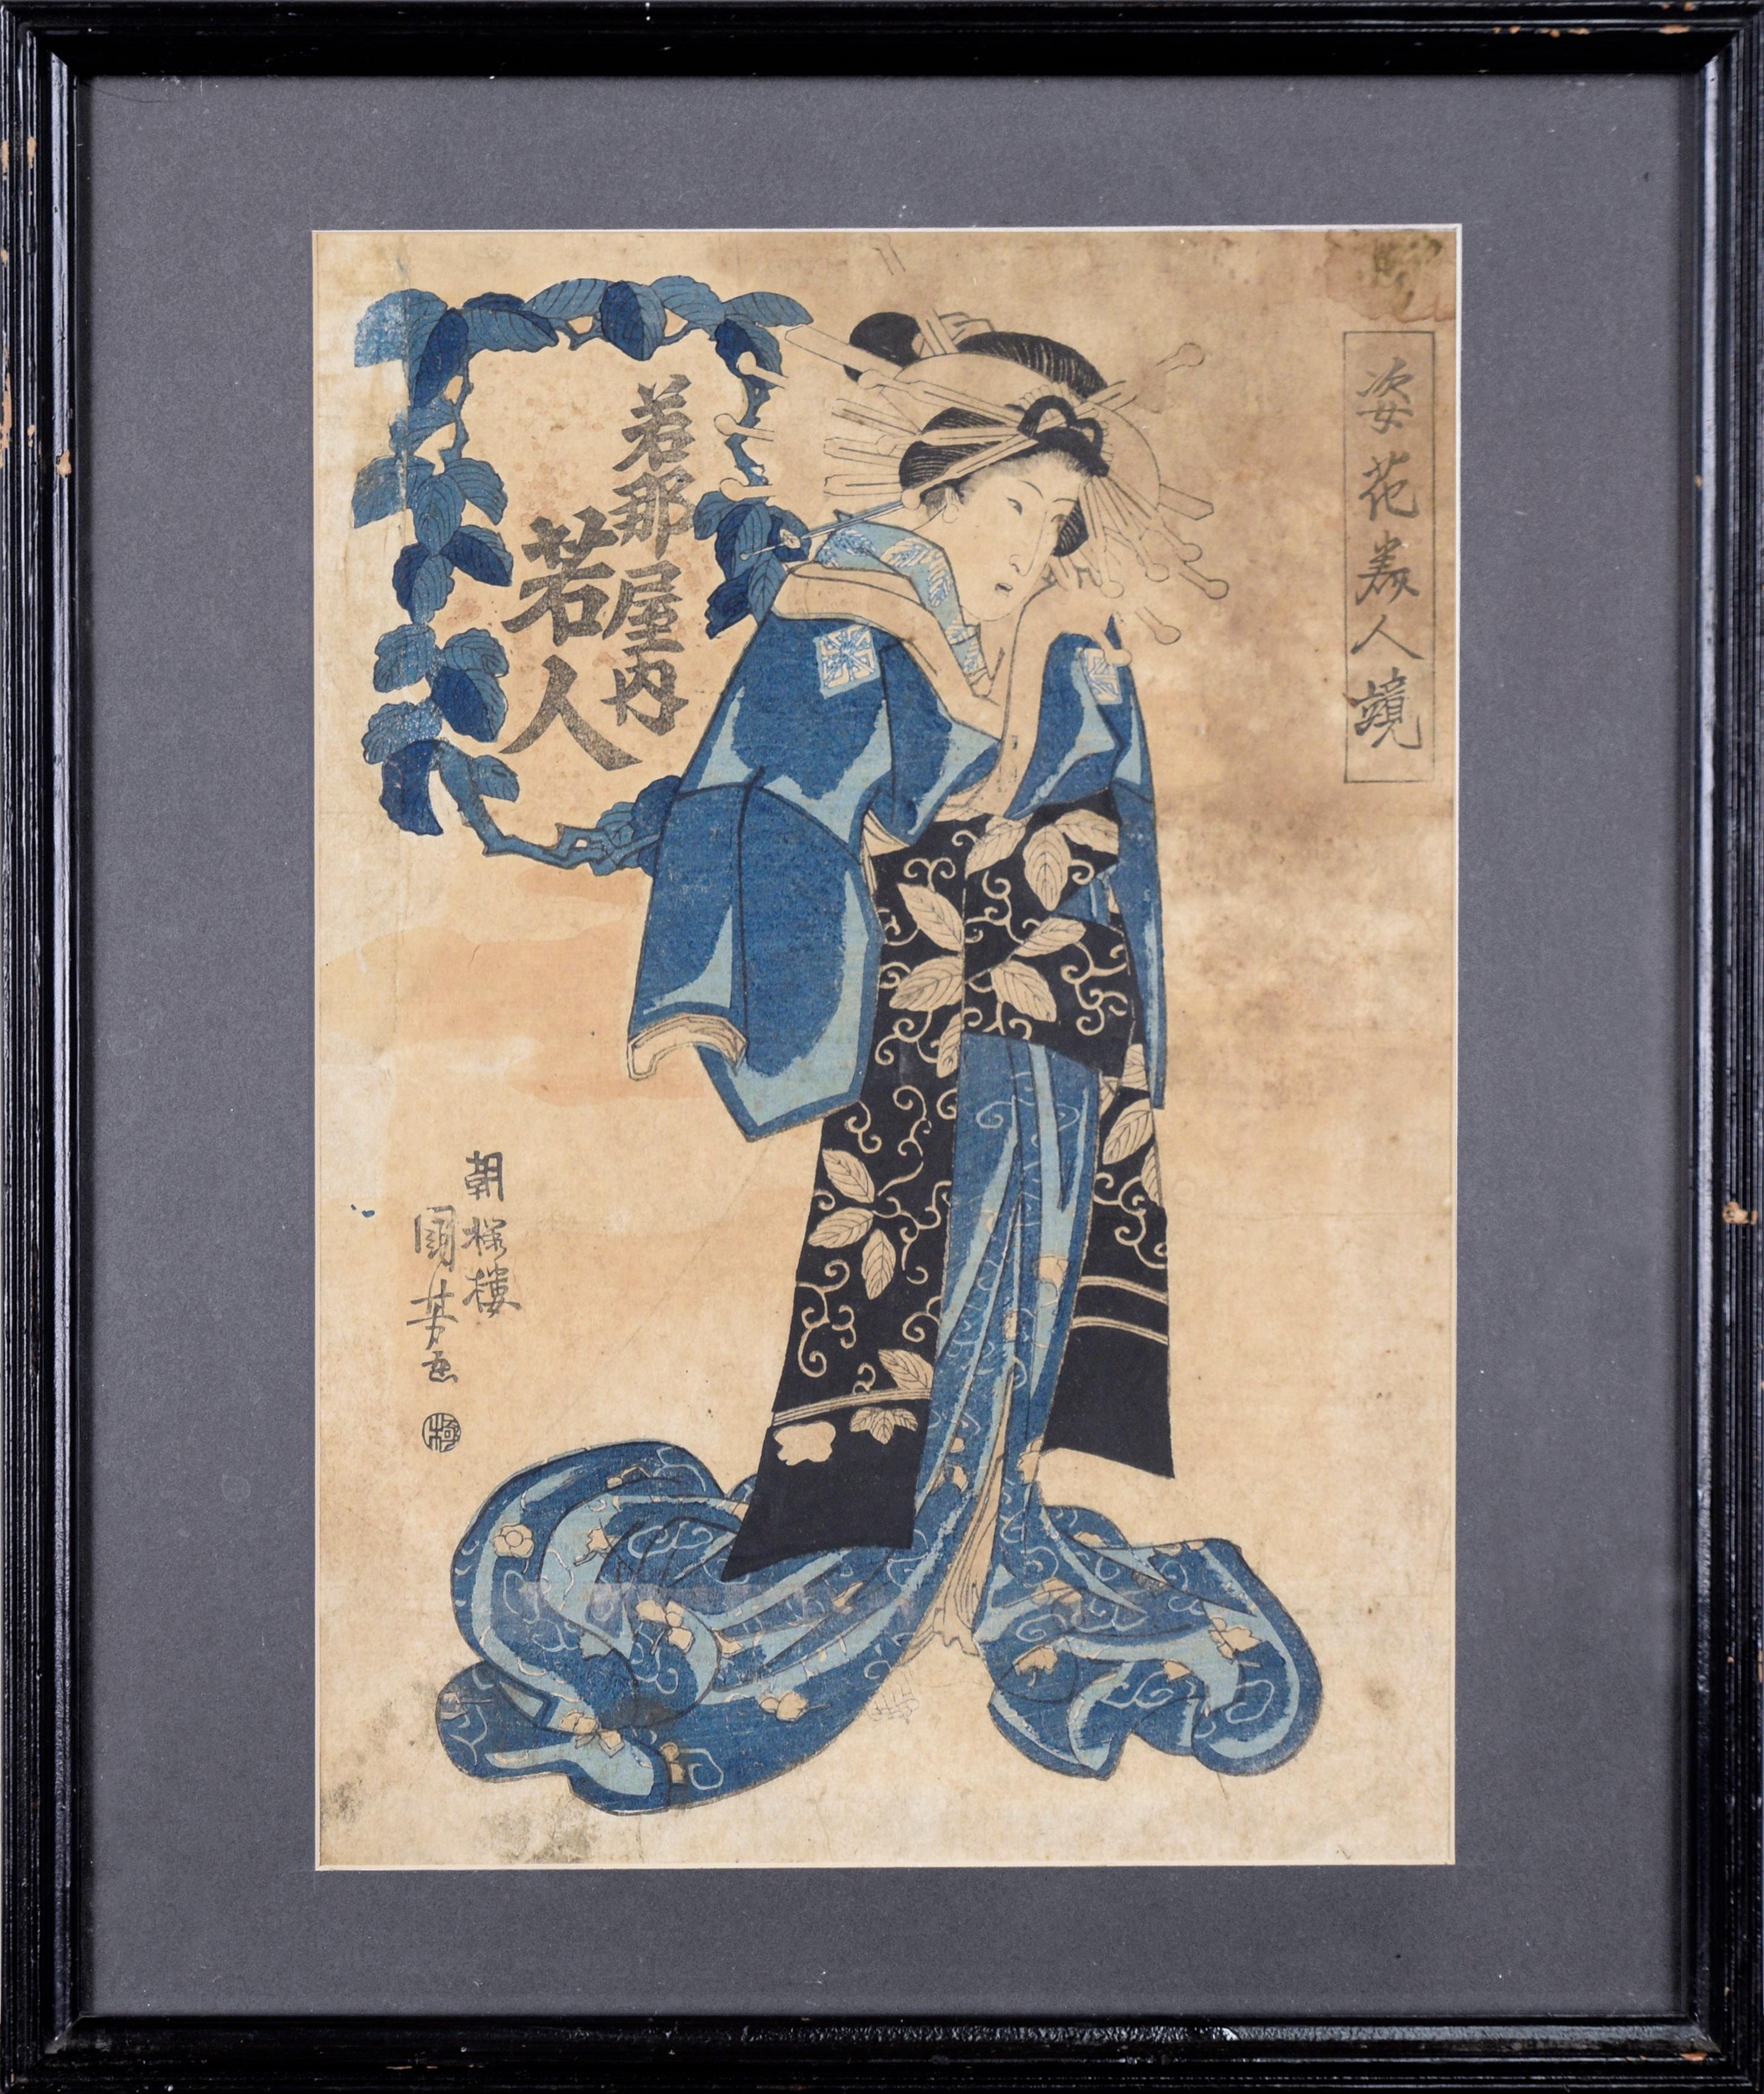 Schönheiten in Form von Blumen verspiegelt – Utagawa Kuniyoshi Japanischer Holzschnitt

Eine japanische Schönheit, gekleidet und posiert wie eine Blume, von Utagawa Kumiyoshi (Japan, 1797 - 1861 ).
Ein zweiter Druck um die Mitte des 19. Jahrhunderts